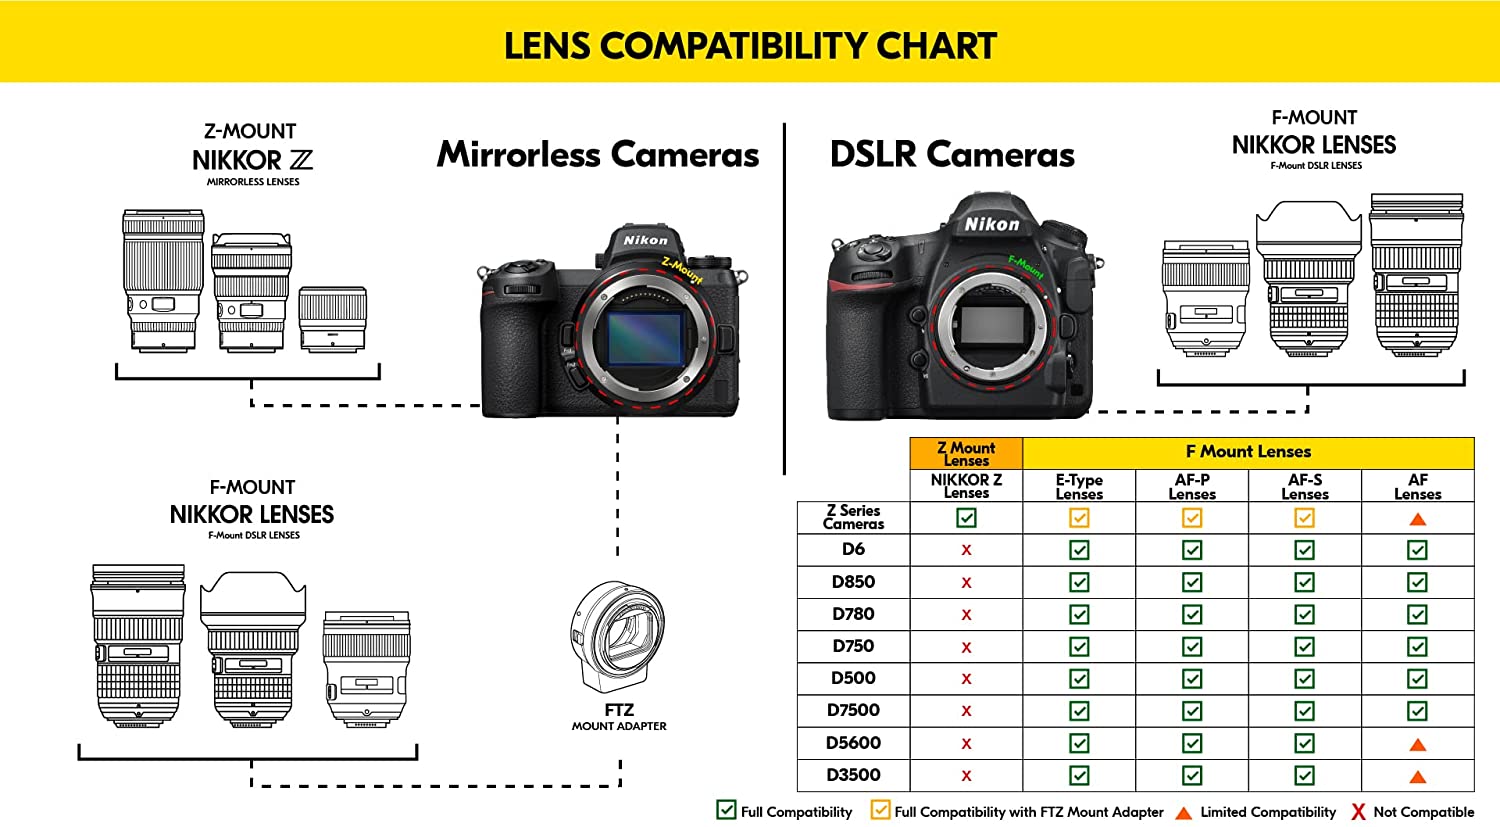 Nikon AF-S 85mm f/1.8G Short Prime Lens (2201) Intl Model Bundle